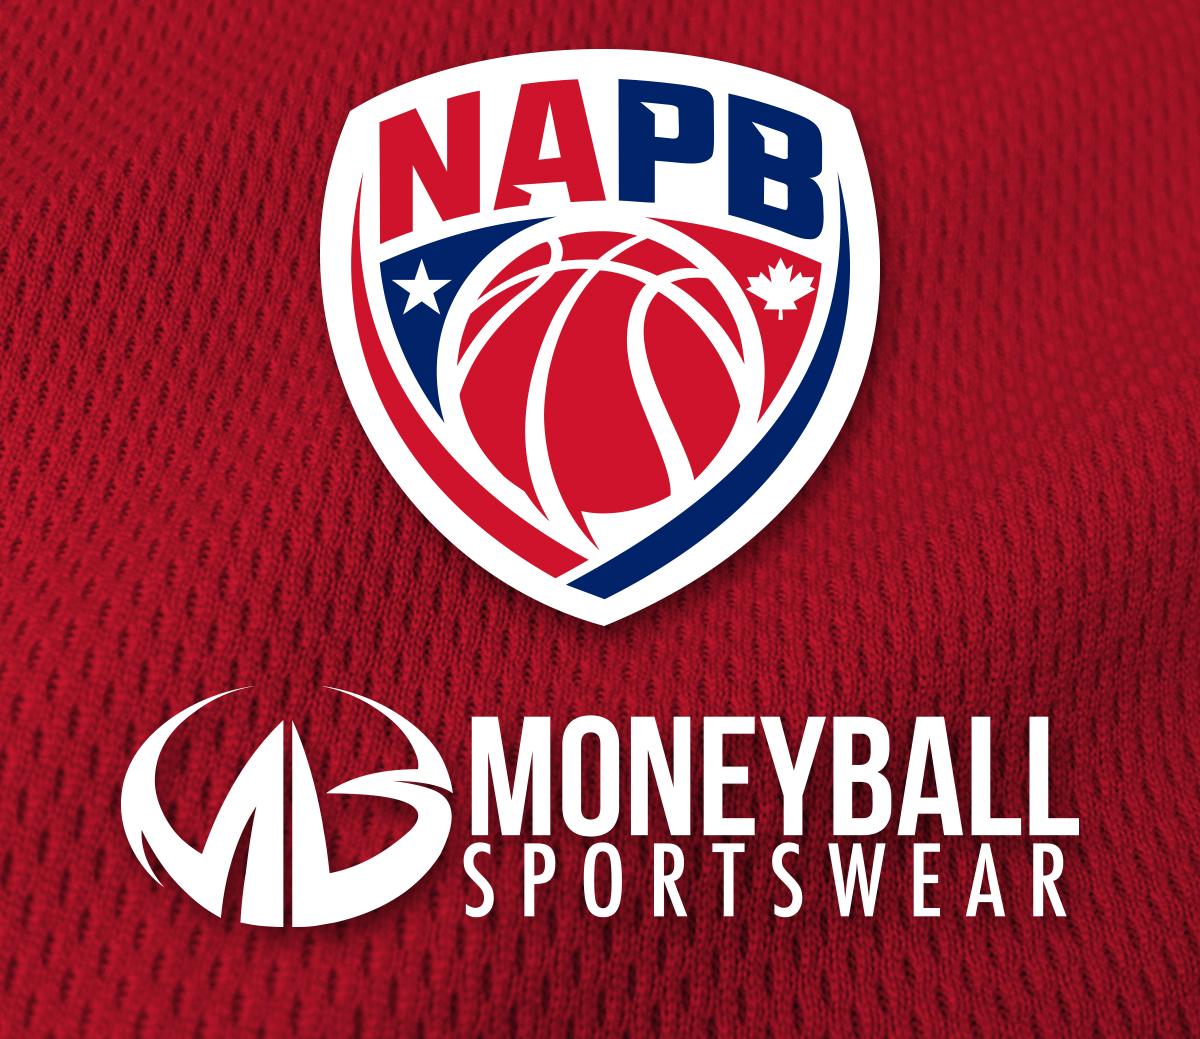 Napb Logo - NAPB Partners With Moneyball Sportswear - Moneyball Sportswear